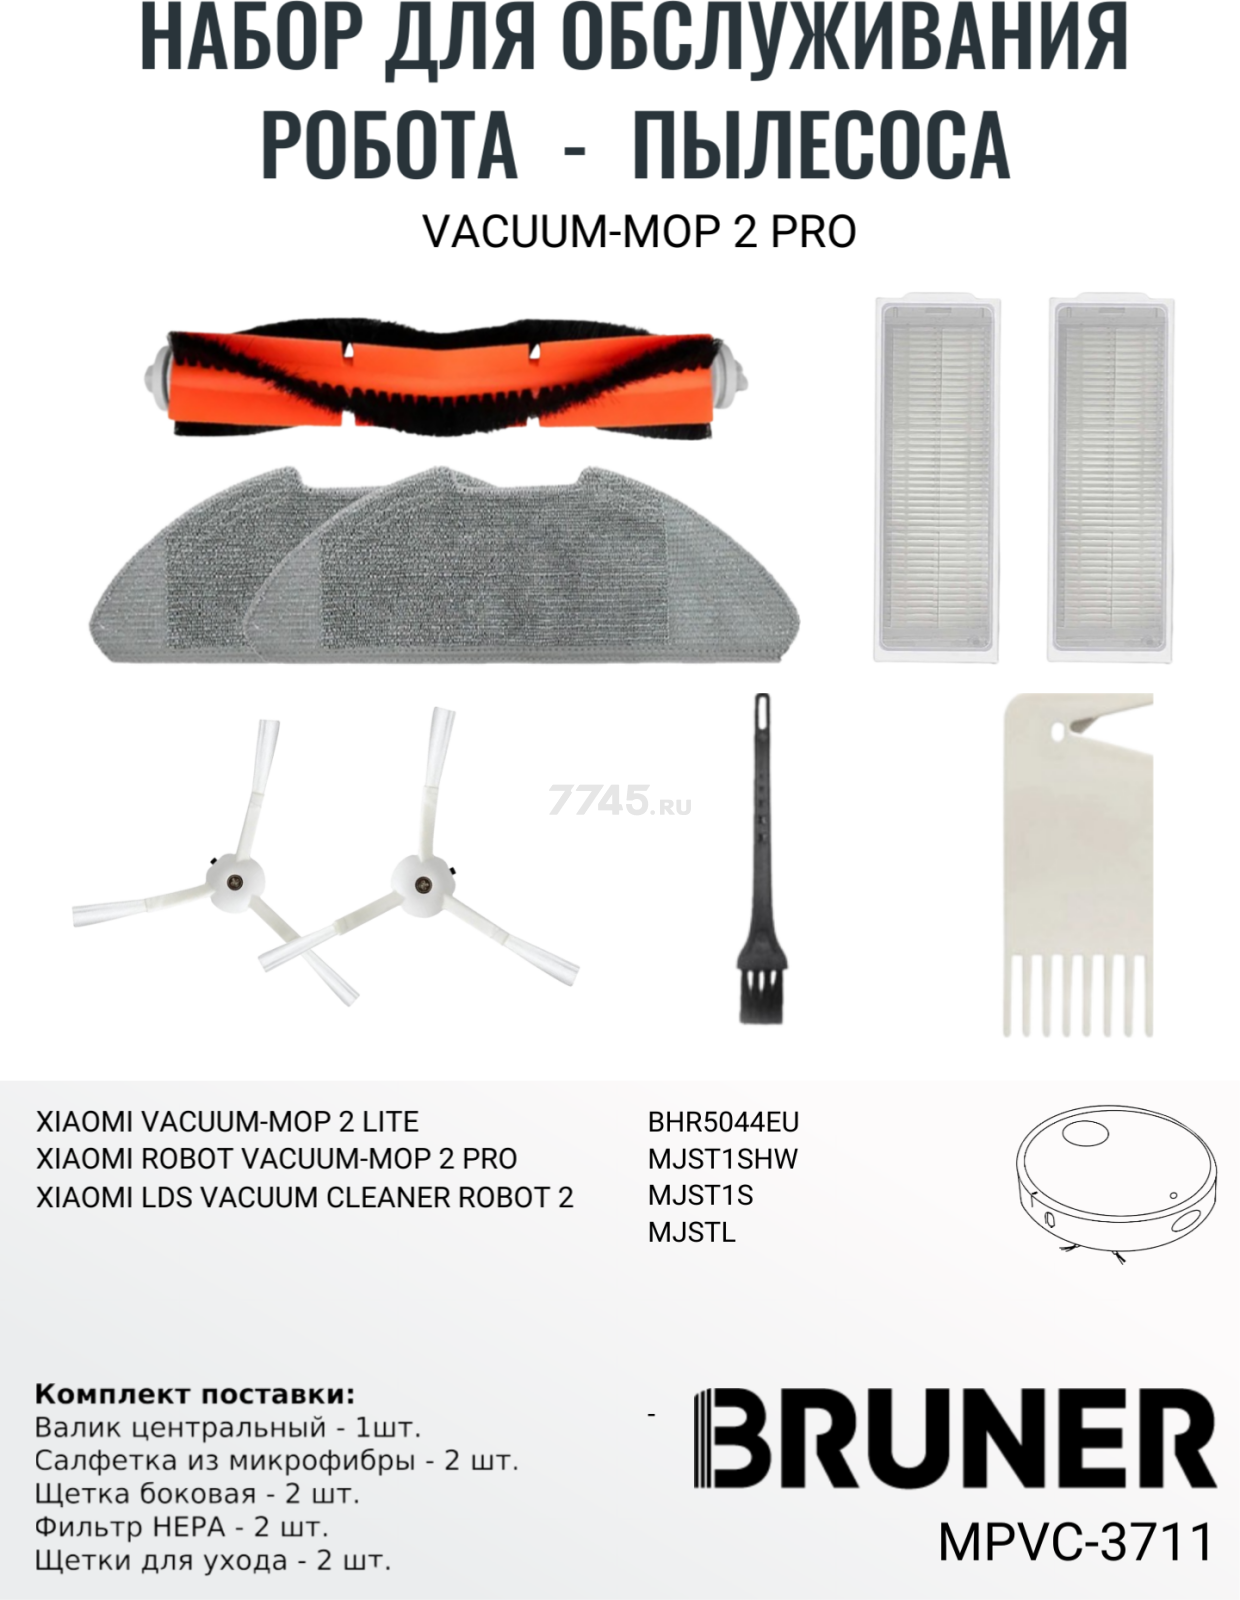 Набор расходных материалов (щетки, валик, салфетка, фильтры) для робота-пылесоса Xiaomi серии Vacuum Mop 2 Pro BRUNER (MPVC-3711) - Фото 2